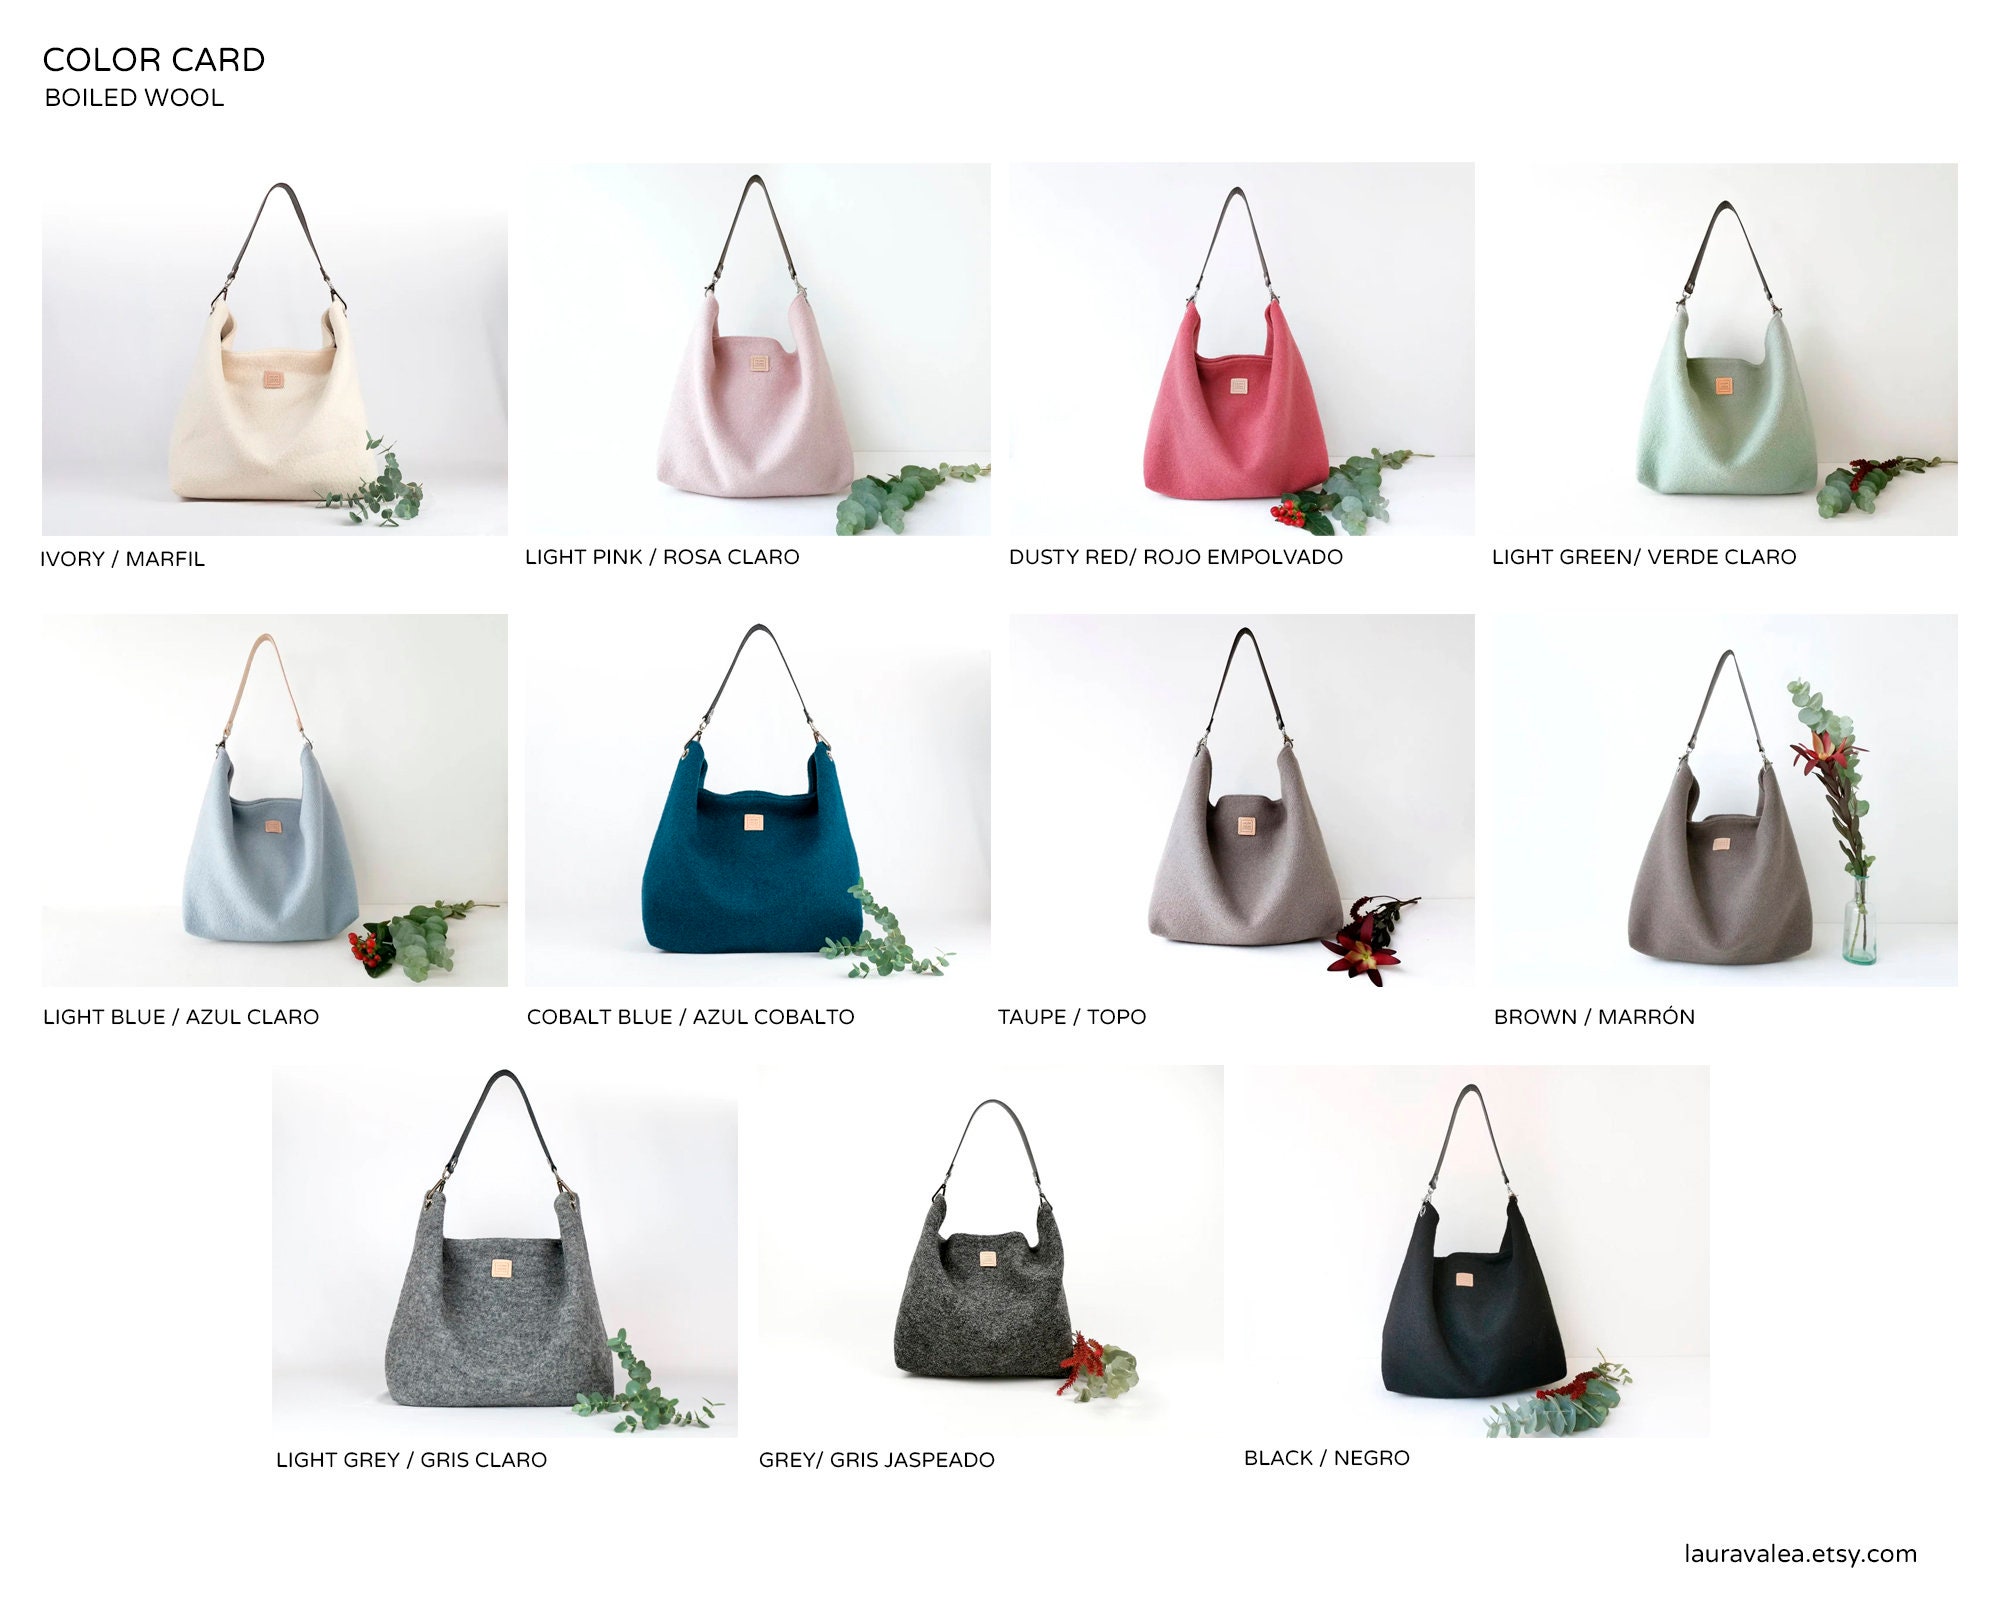 Bolso saco grande de tela con asa ancha y reversible, puede ser de colores  azules o rojos.